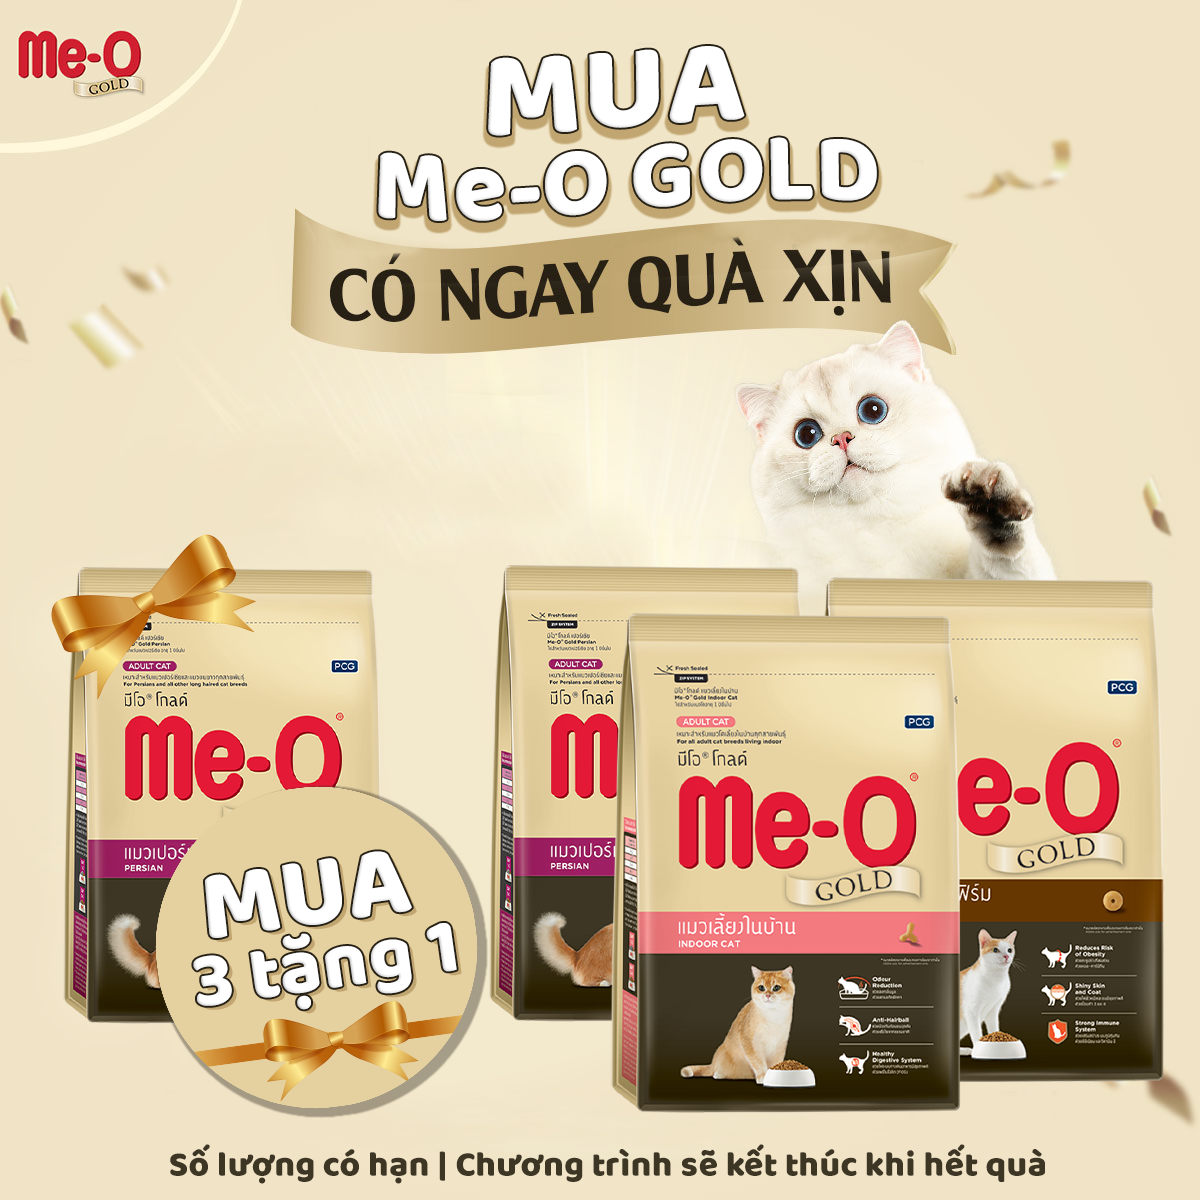 MUA 3 TẶNG 1 ME-O GOLD